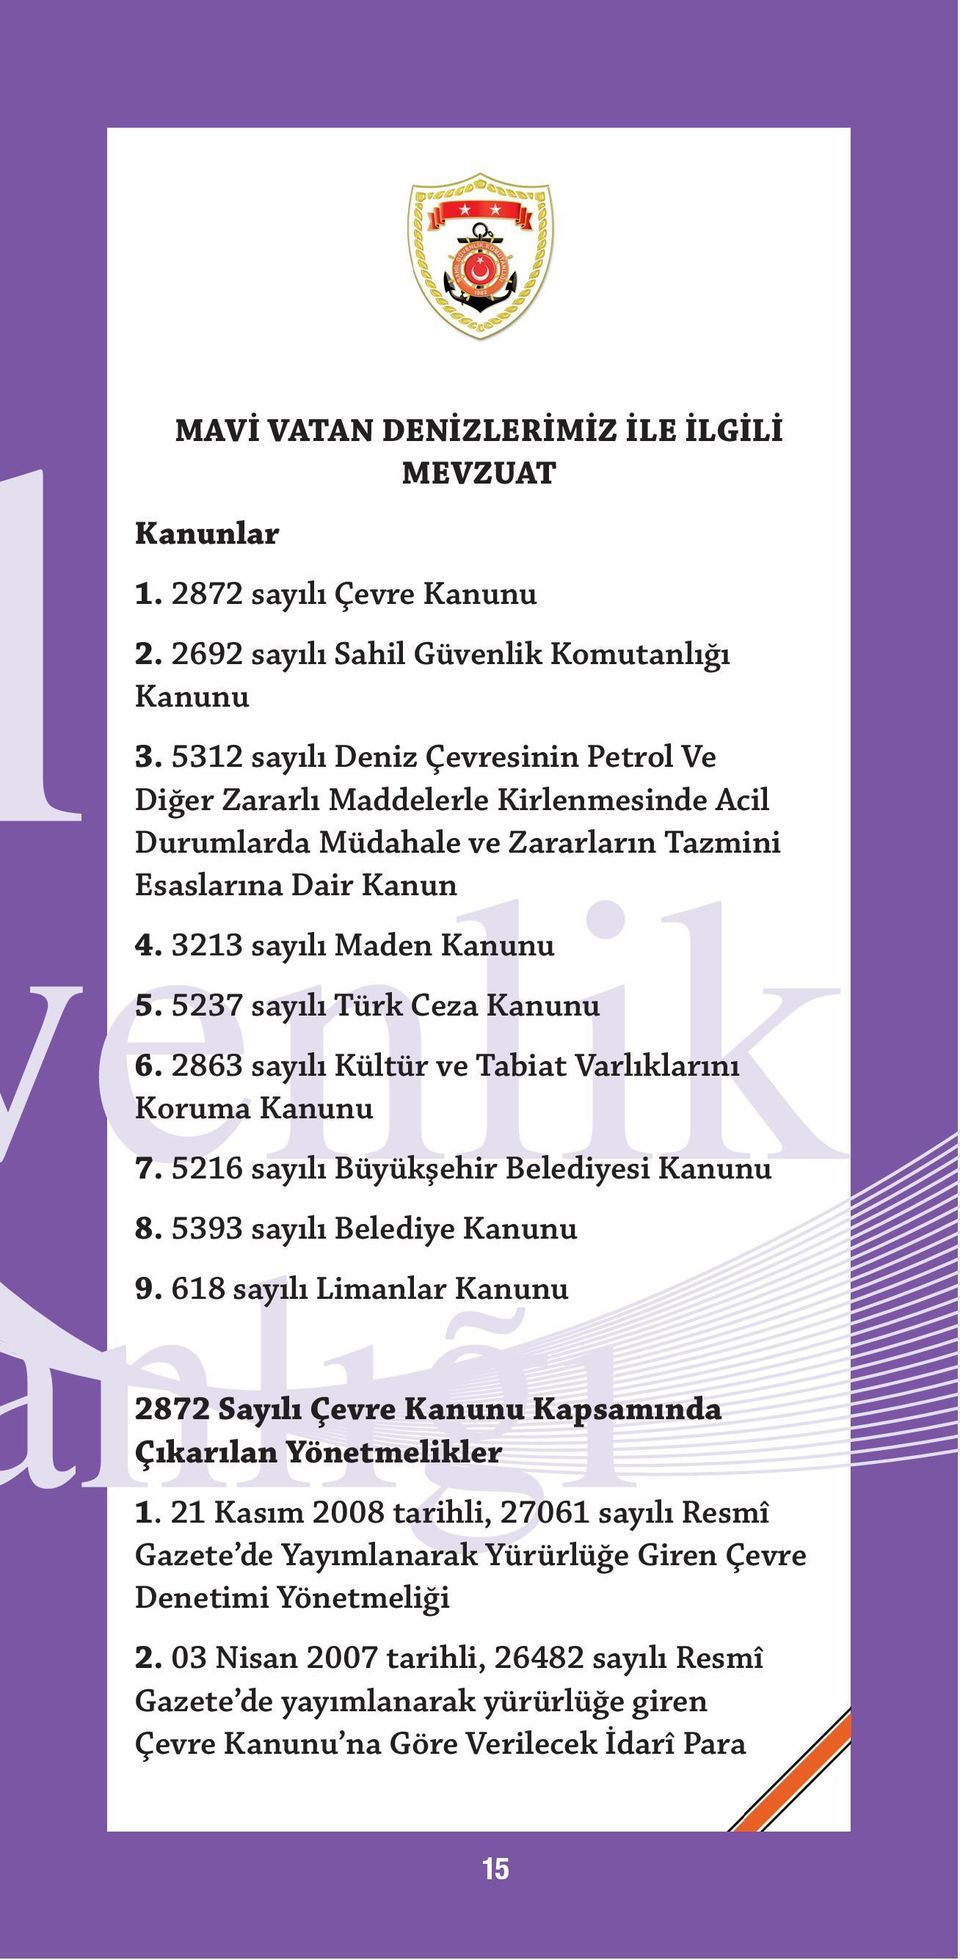 5237 sayılı Türk Ceza Kanunu 6. 2863 sayılı Kültür ve Tabiat Varlıklarını Koruma Kanunu 7. 5216 sayılı Büyükşehir Belediyesi Kanunu 8. 5393 sayılı Belediye Kanunu 9.